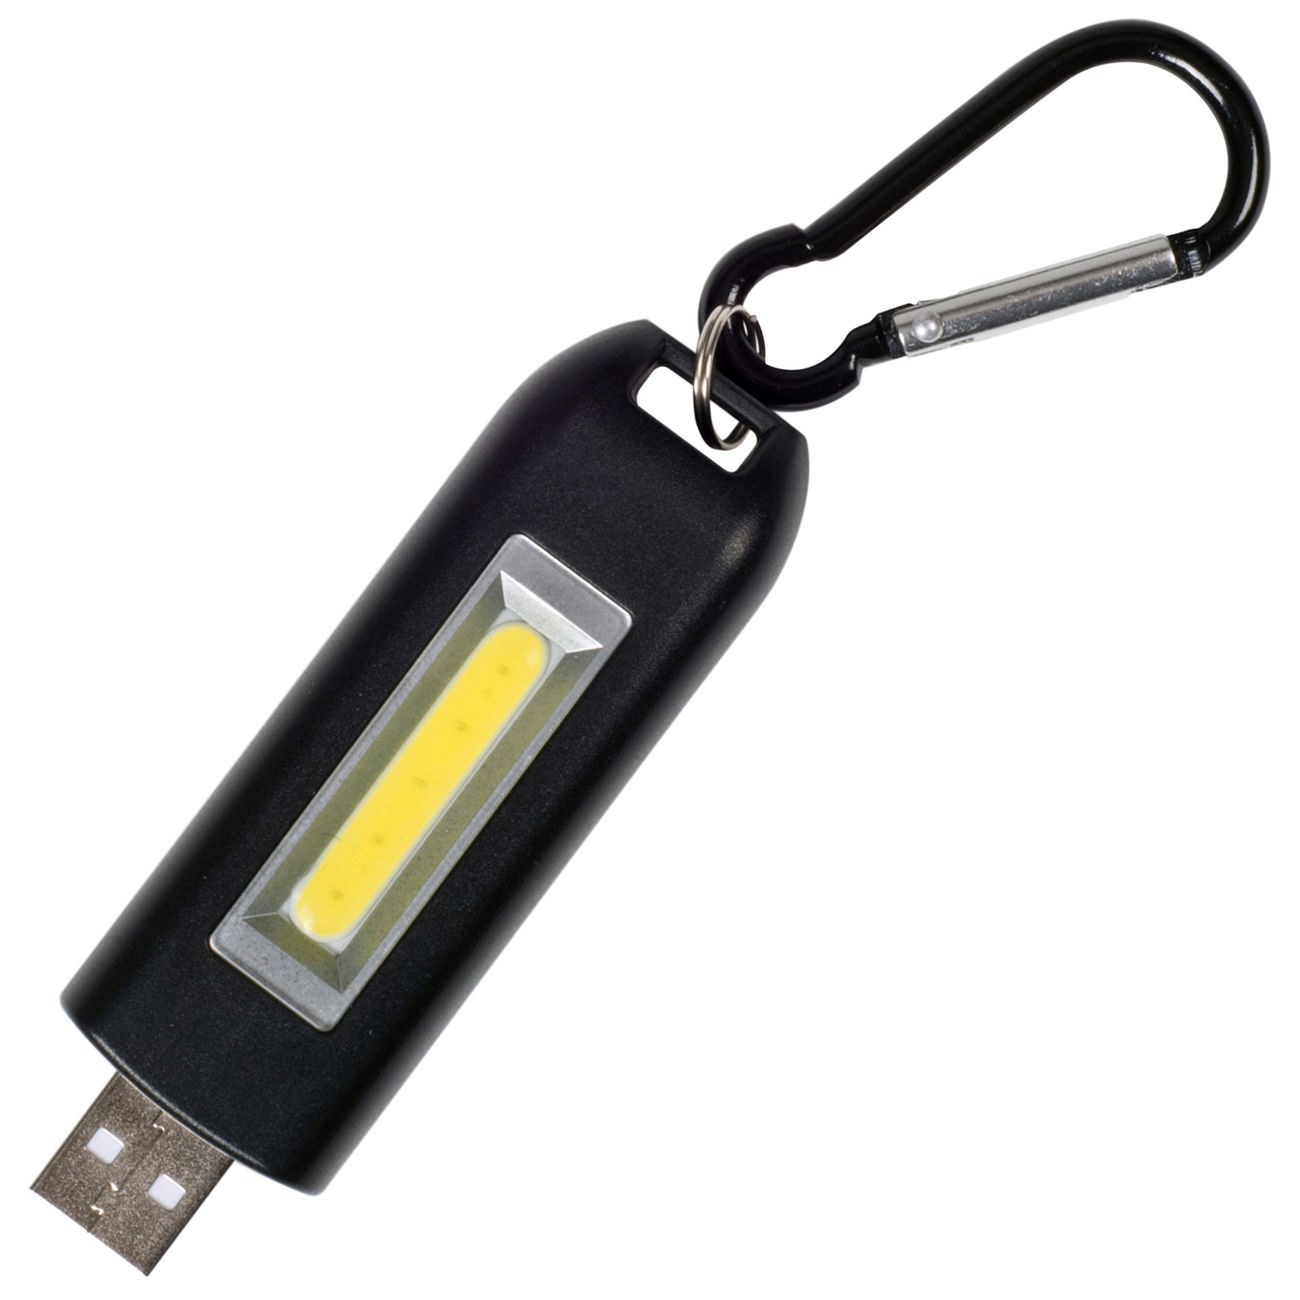 USB-Stick doppel Licht Leuchte 2 Watt XL Lampe Taschenlampe USB-Lampe 7x2cm 